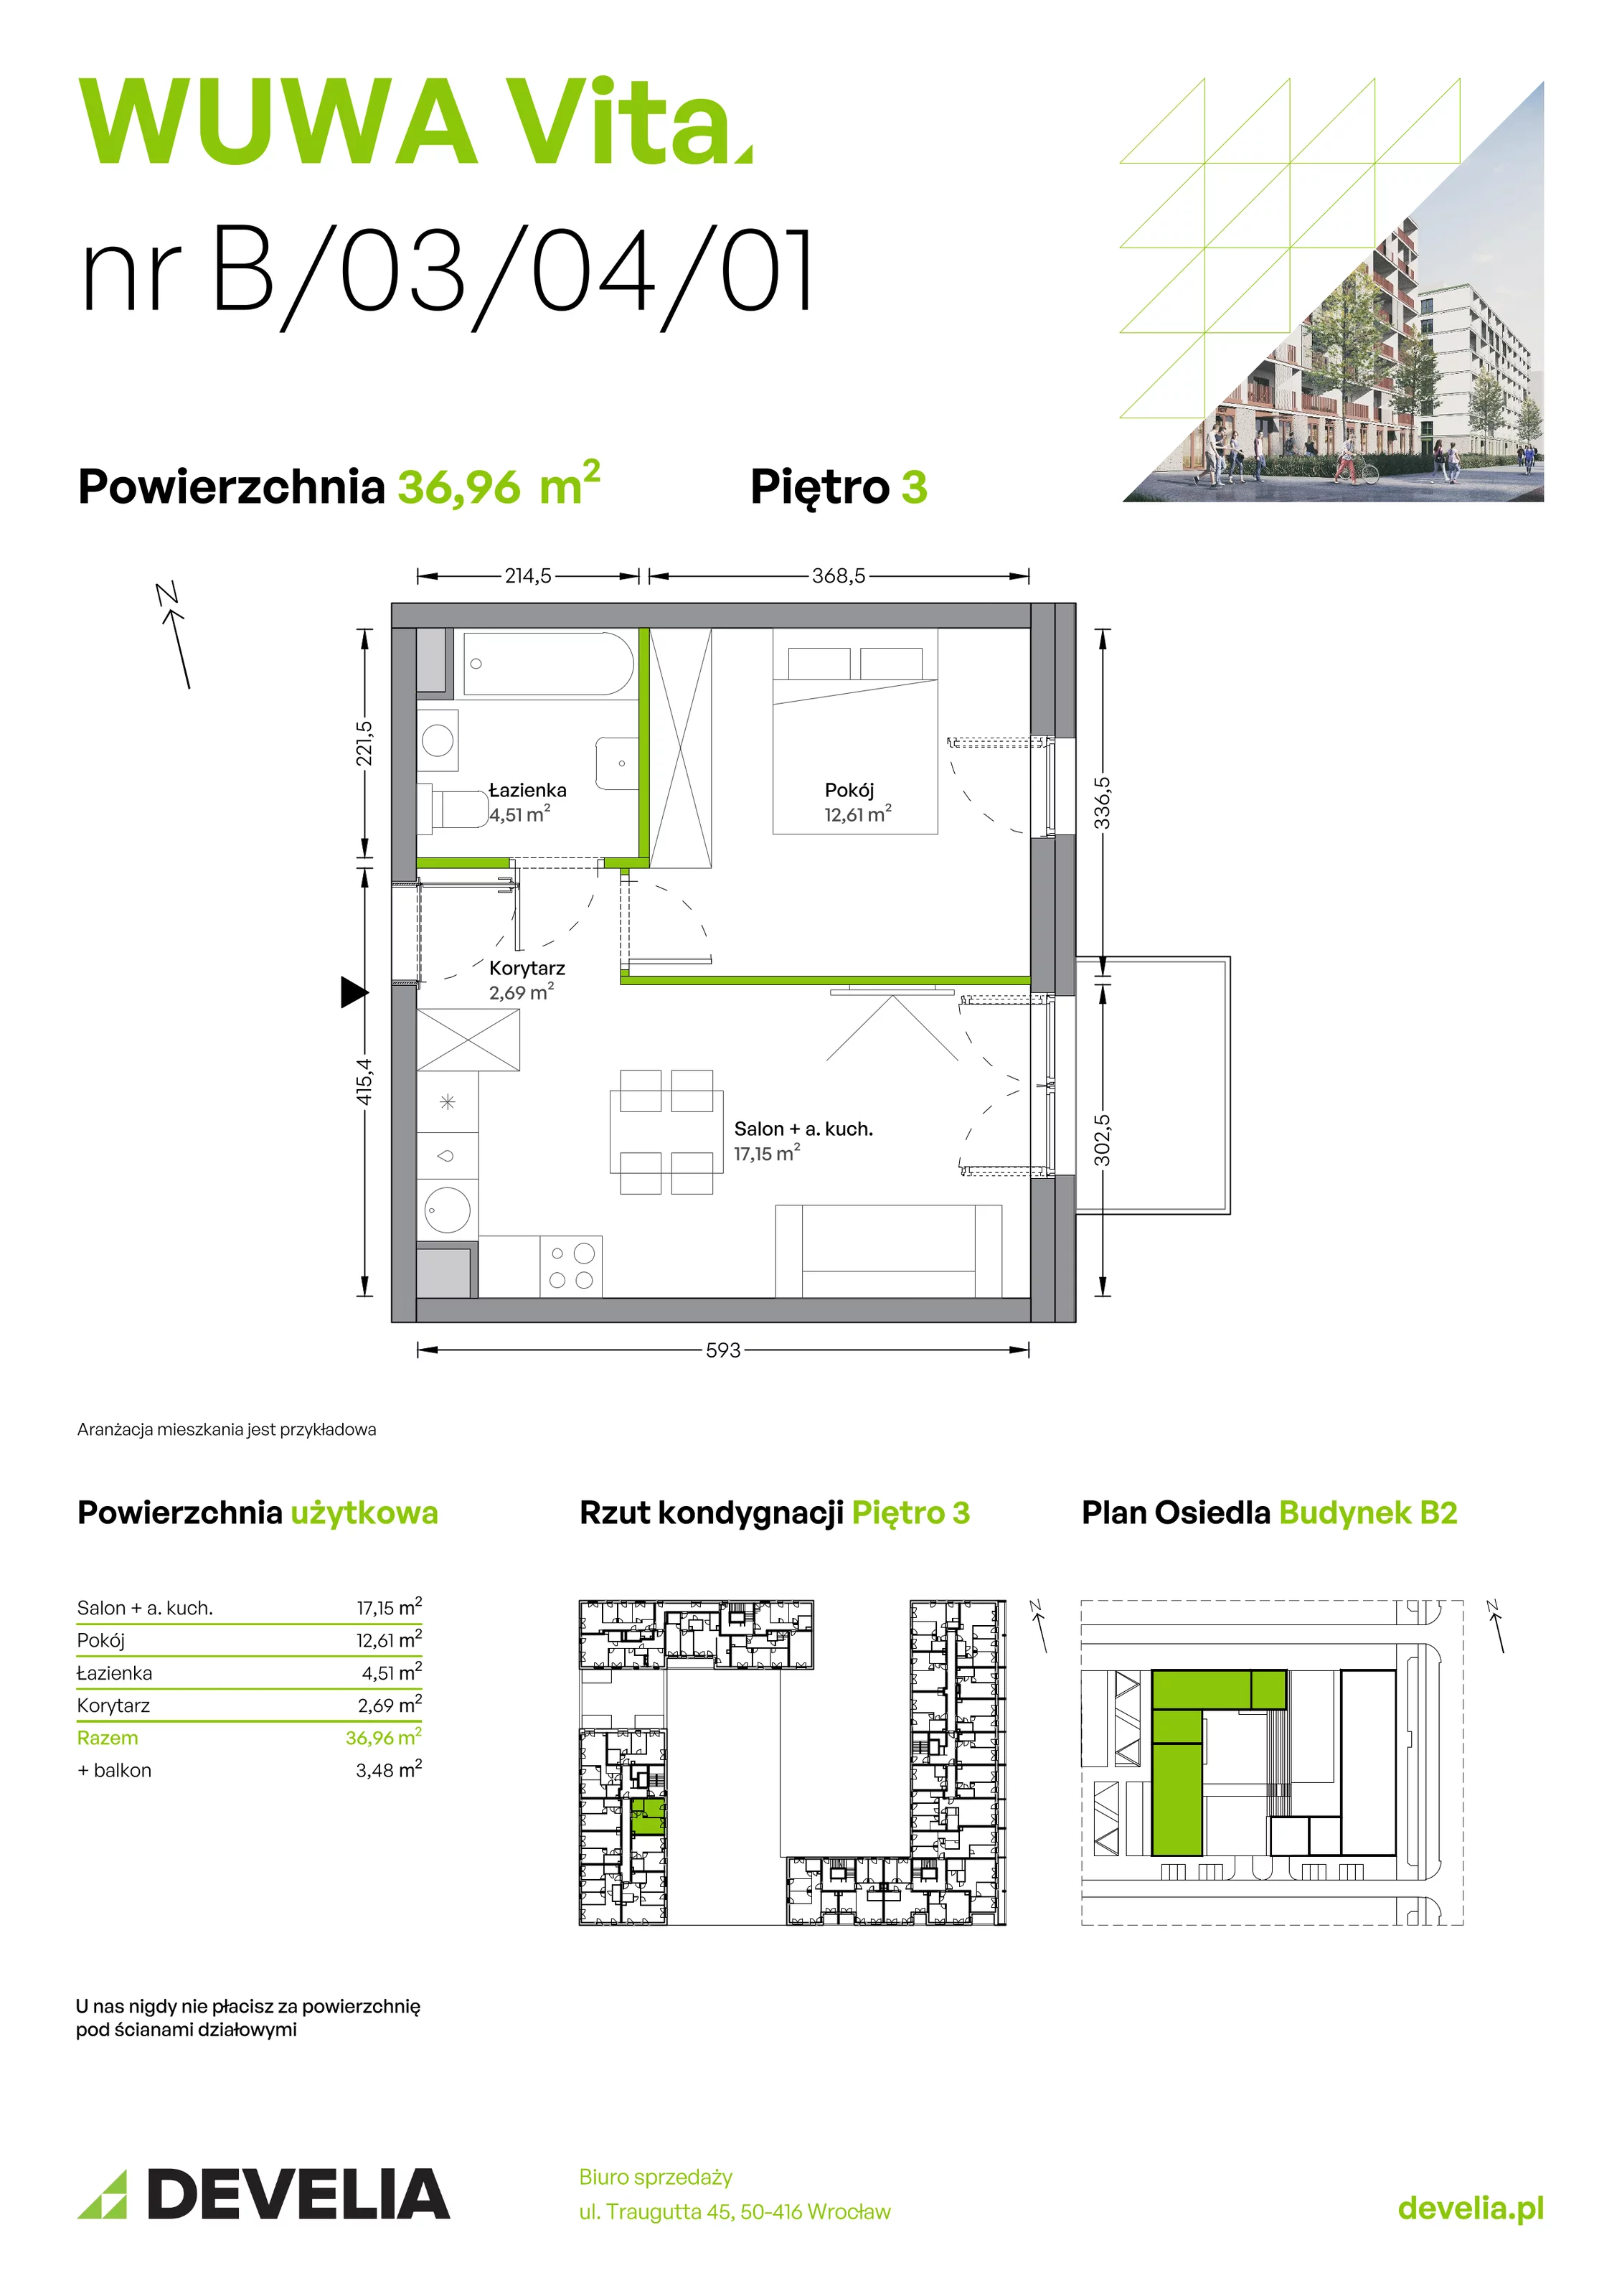 Mieszkanie 36,96 m², piętro 3, oferta nr B.03.04.01, WUWA Vita, Wrocław, Żerniki, Fabryczna, ul. Tadeusza Brzozy